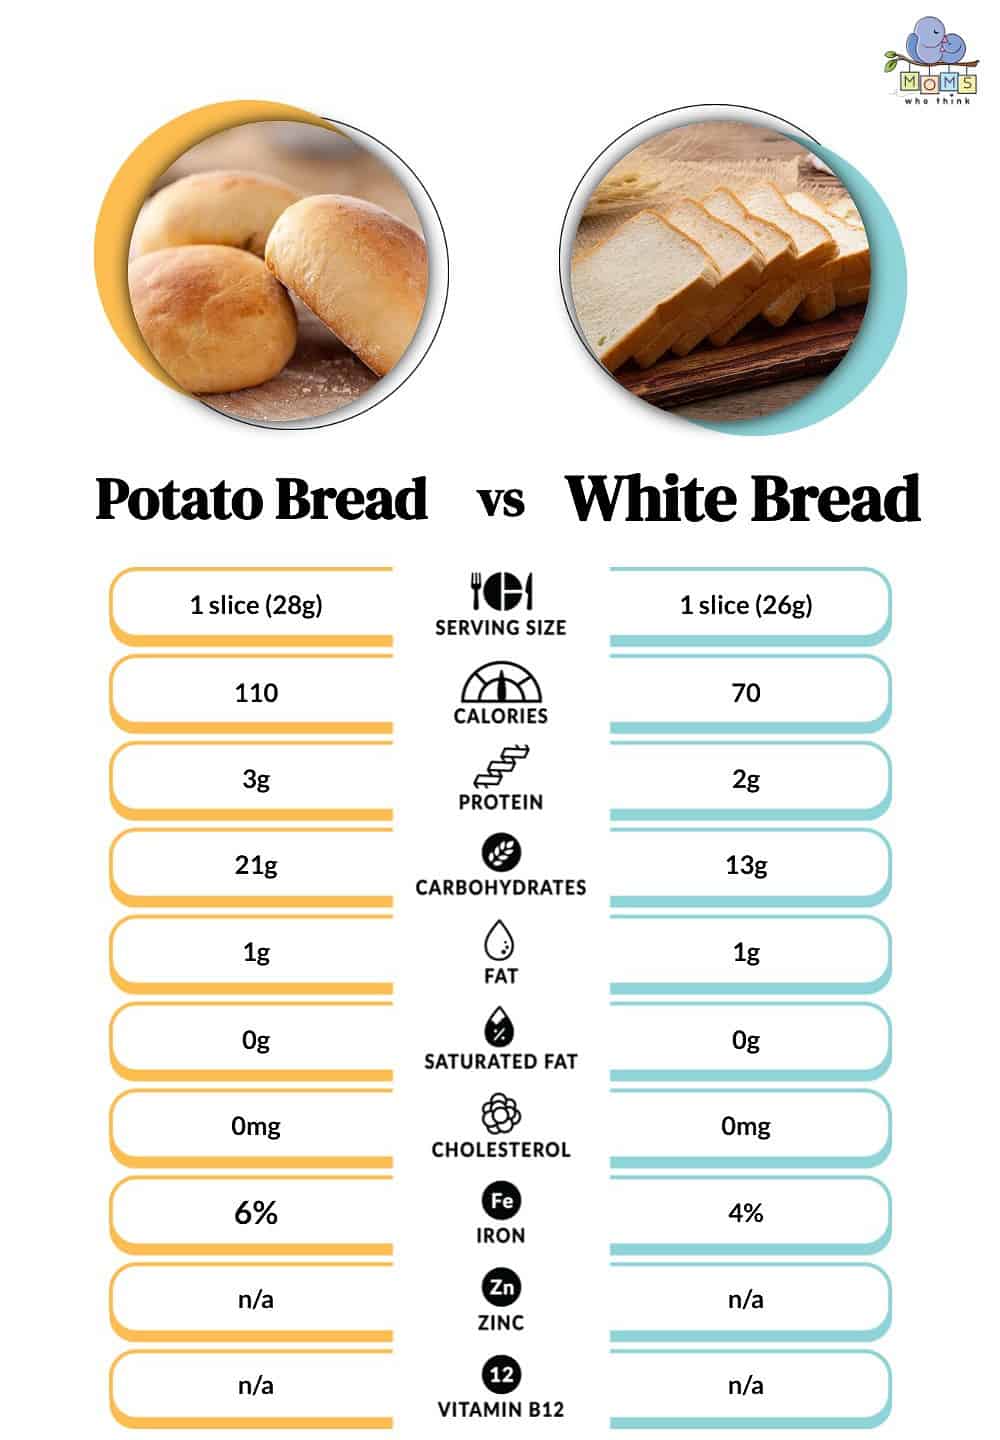 Potato Bread vs White Bread Nutritional Facts